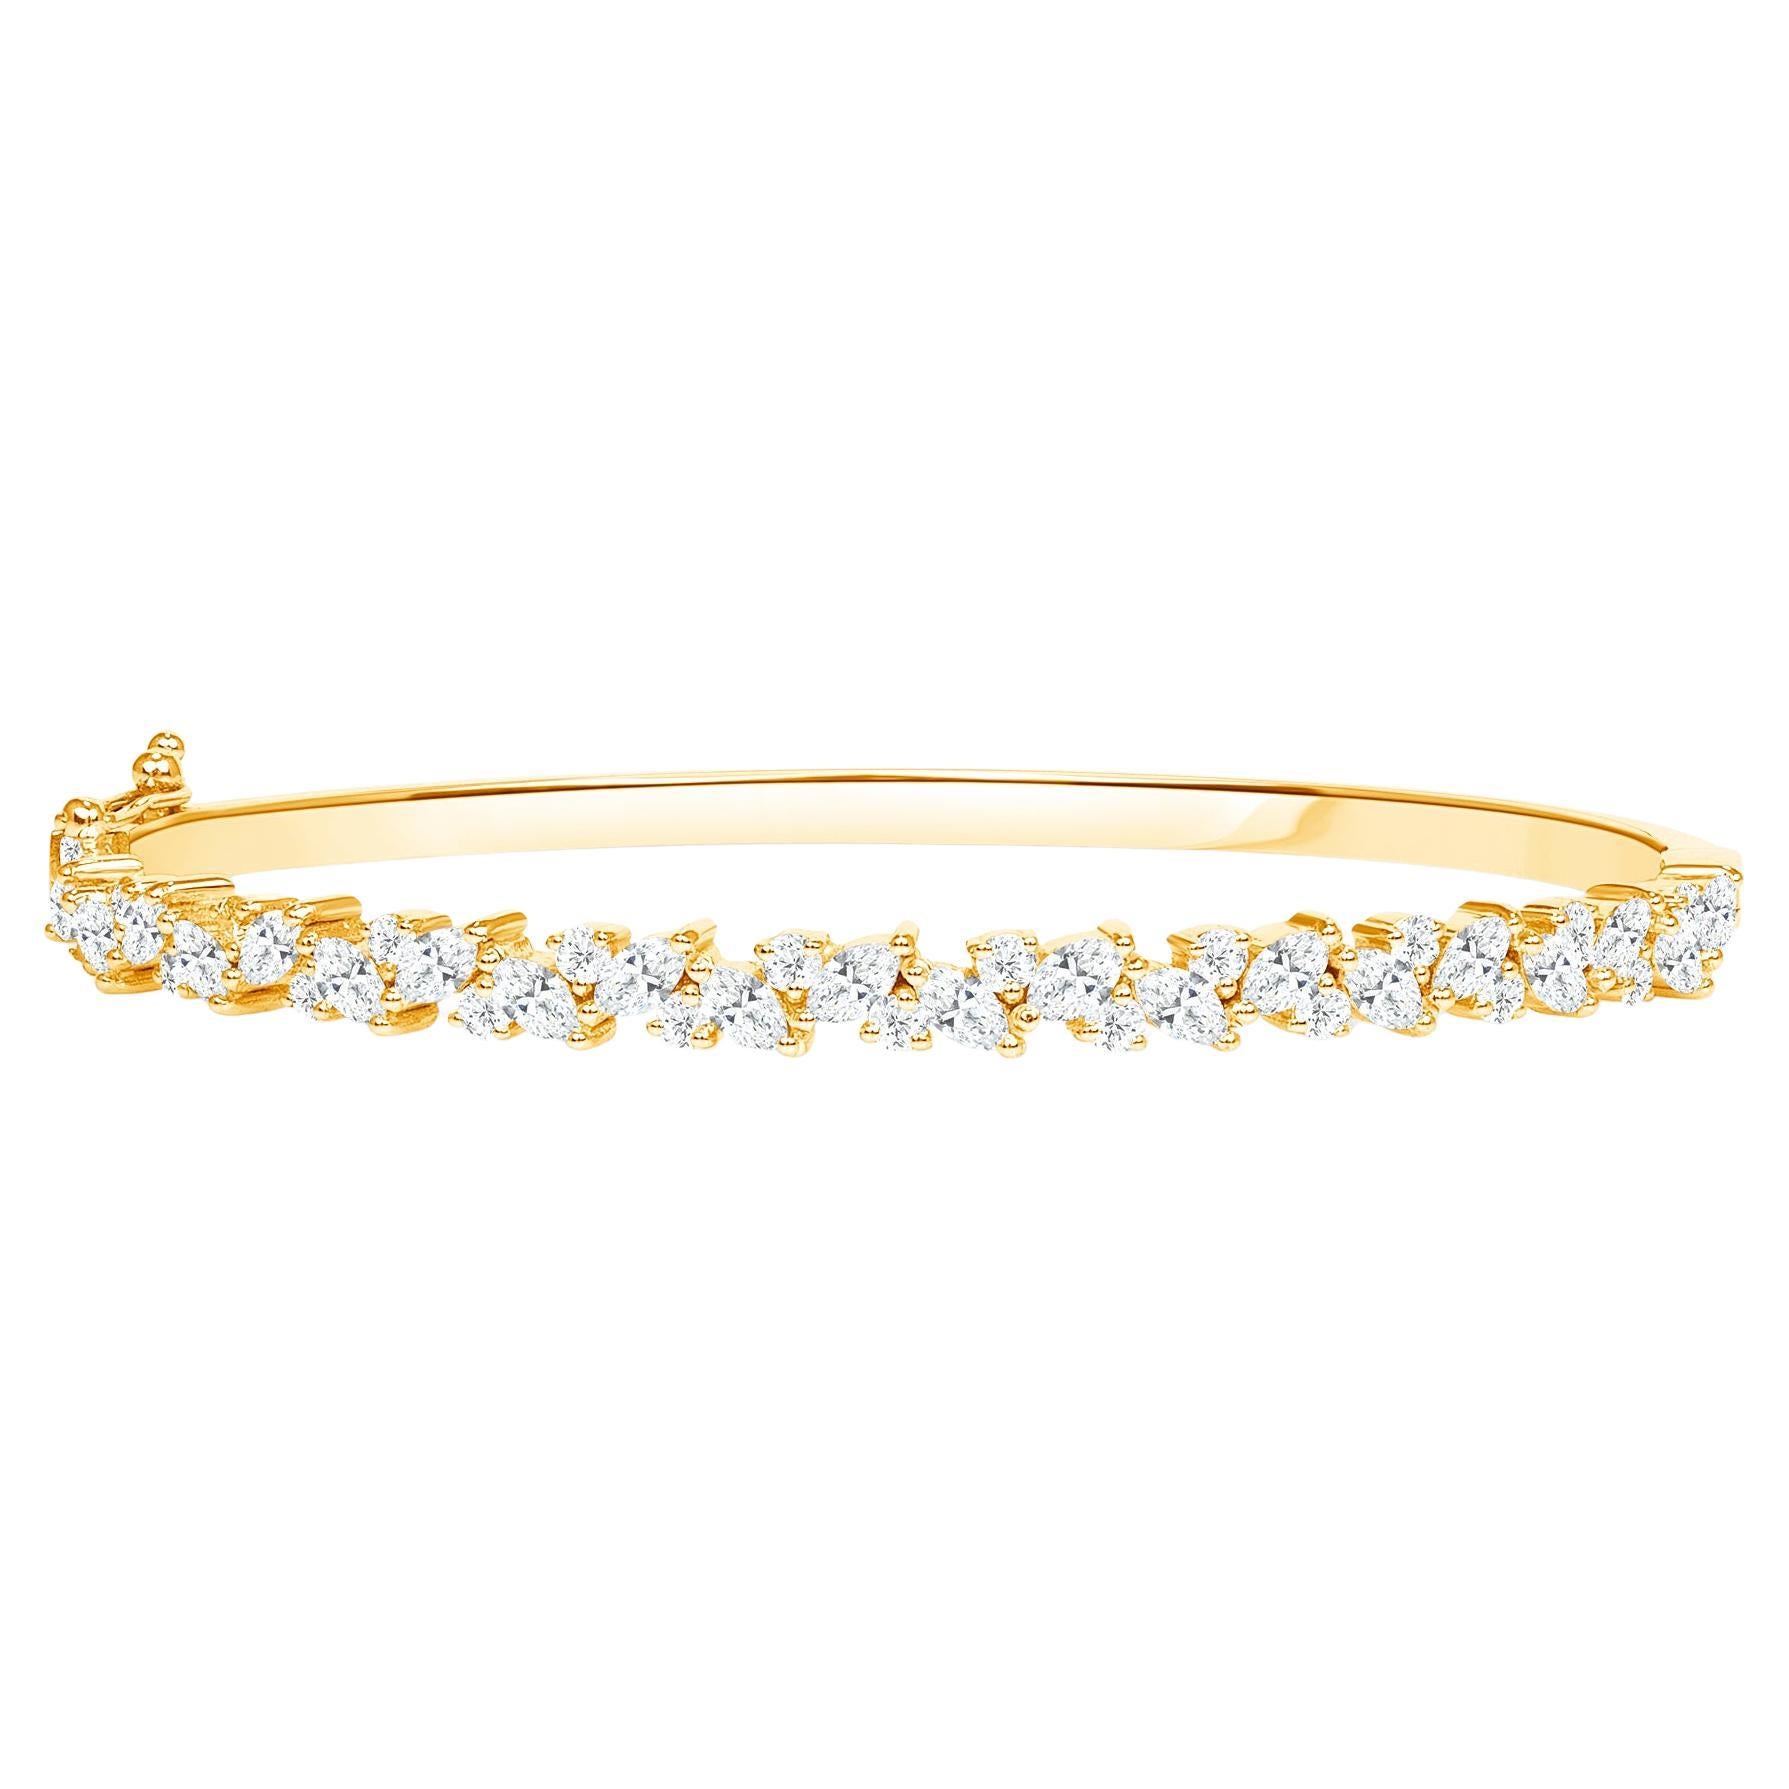 Bracelet jonc massif en or jaune 18 carats avec diamants marquises  Combiné à des diamants ronds